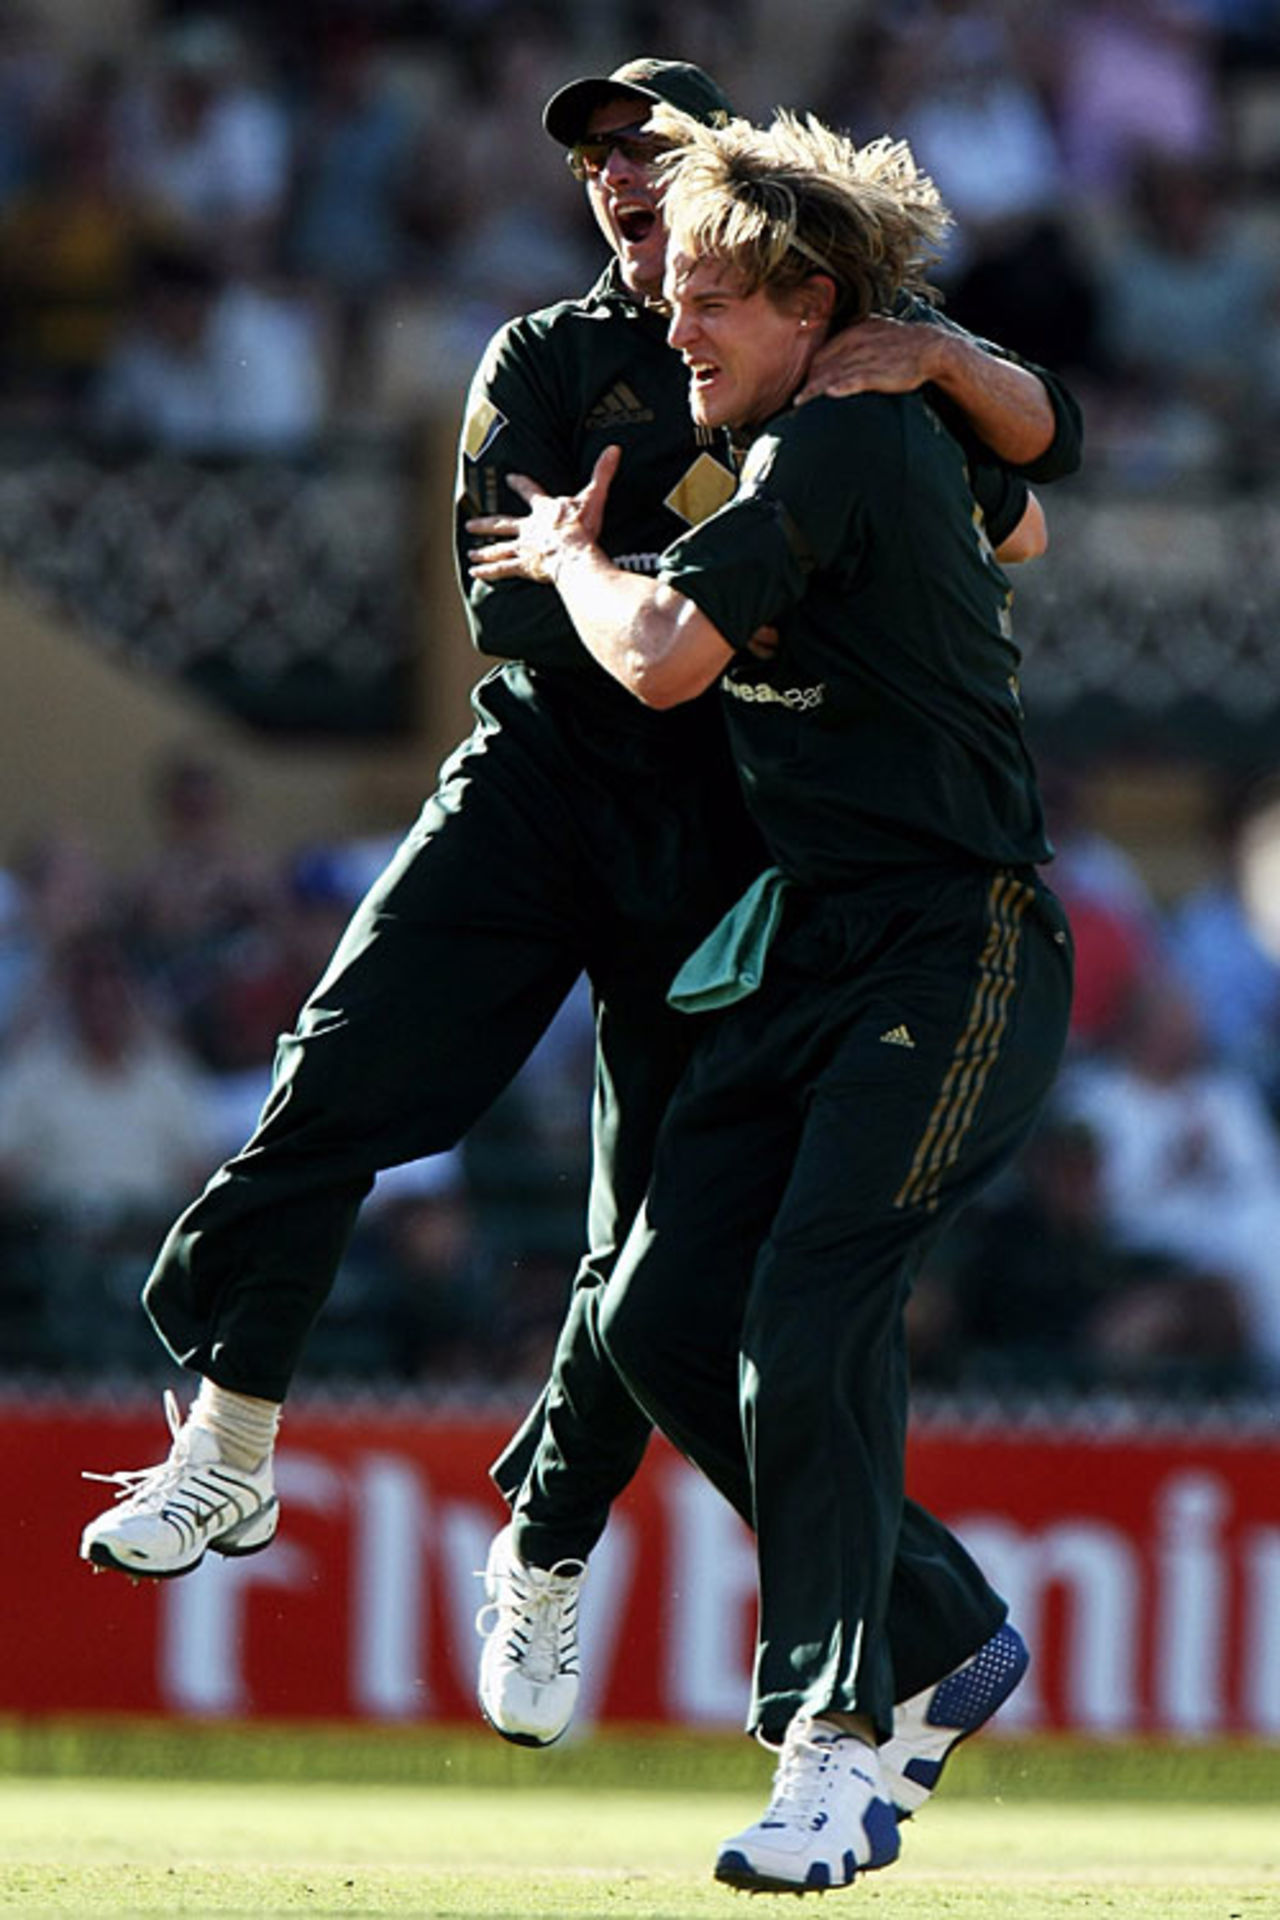 Nathan Bracken is overjoyed after dismissing Sachin Tendulkar, Australia v India, 7th match, CB Series, Adelaide, February 17, 2008